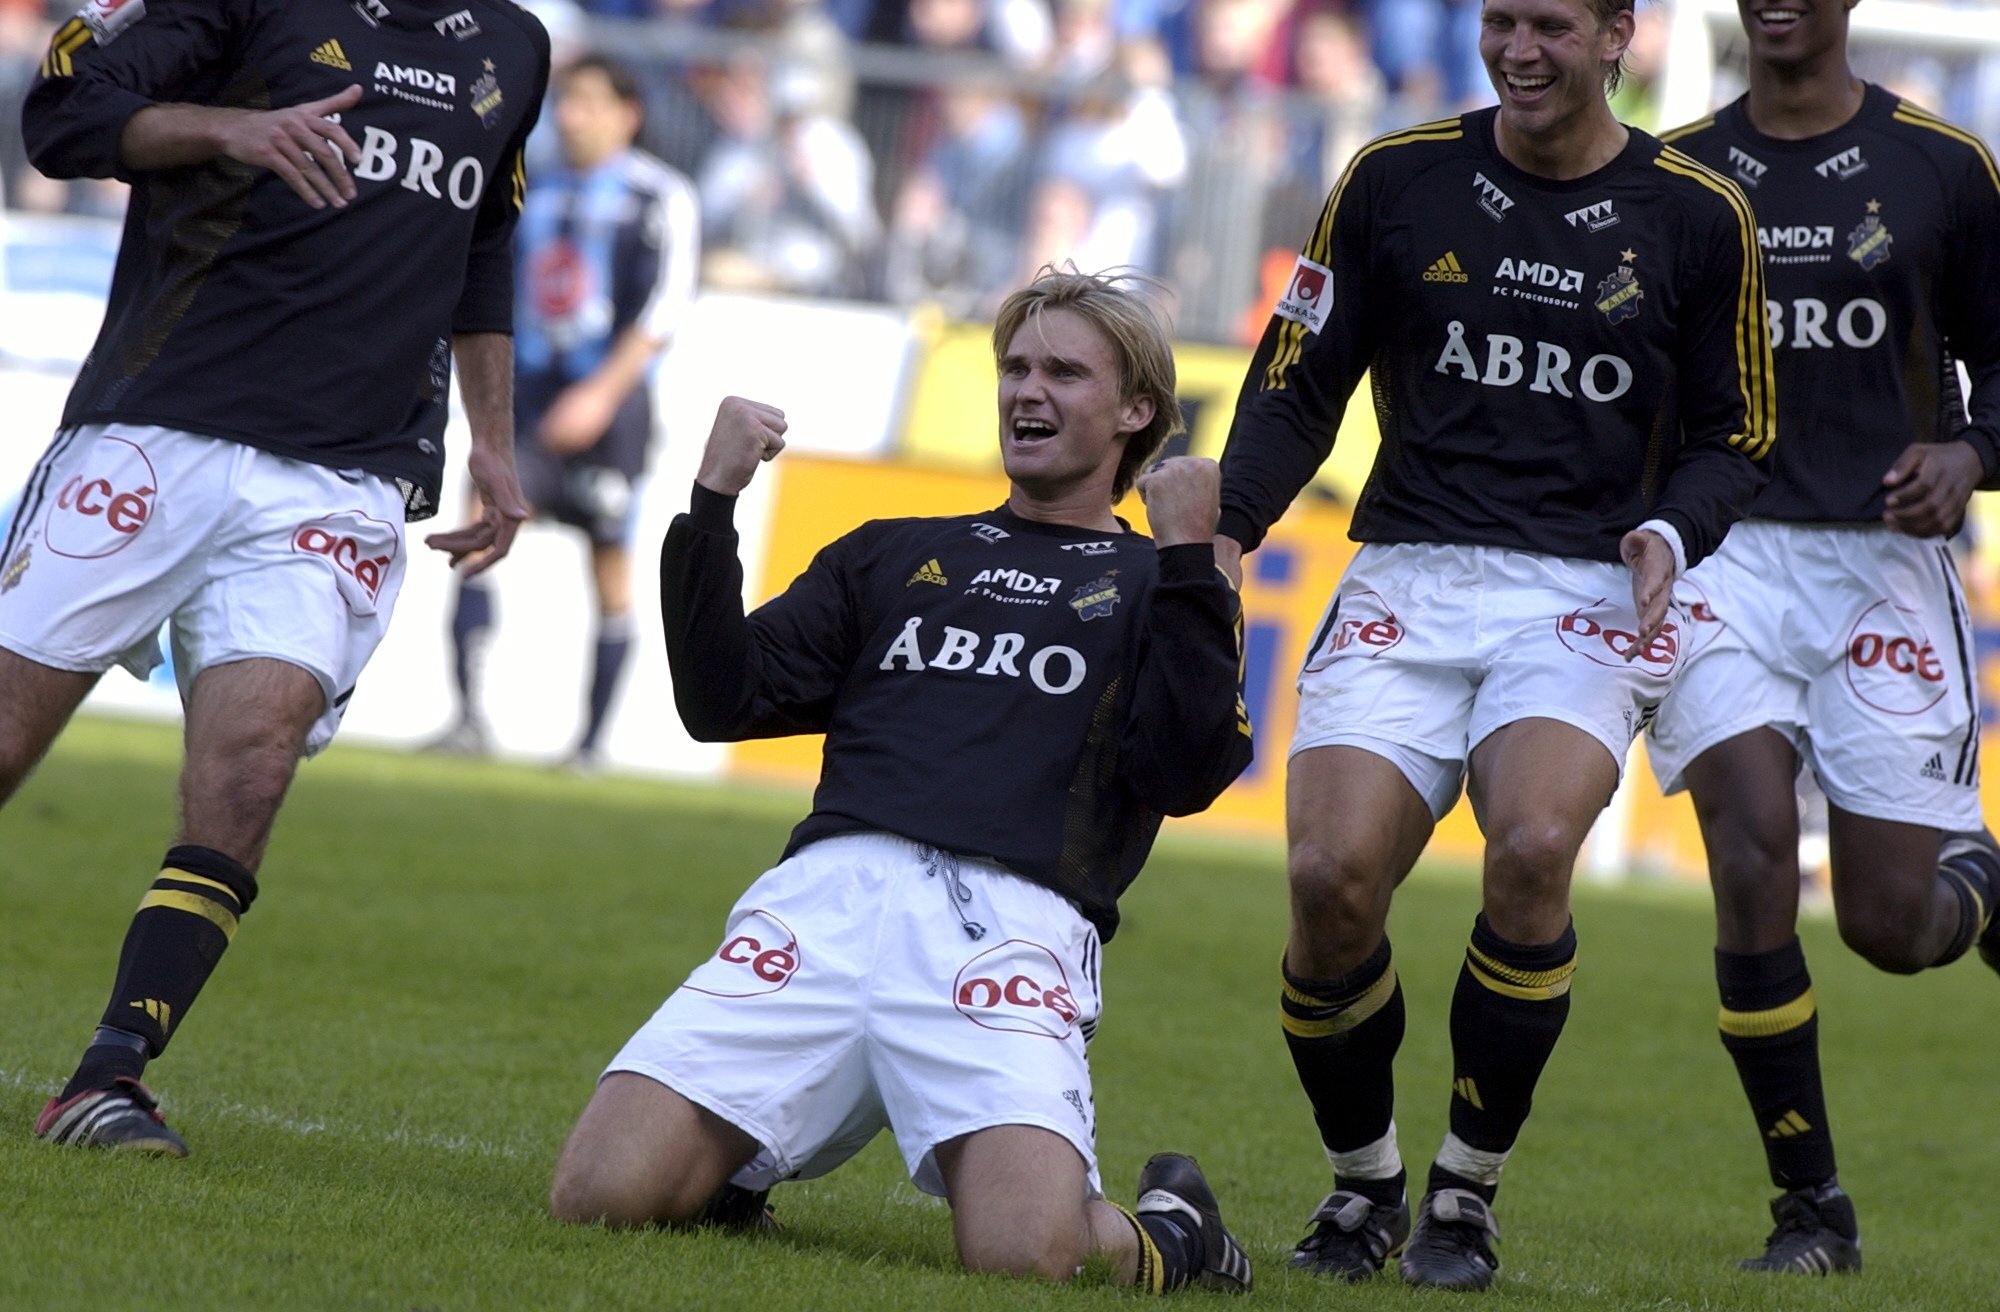 Andreas Andersson skriker ut sin glädje på Råsundas gräsmatta. 2002. Notera väl att han inte filmar, utan jublar - inget annat.